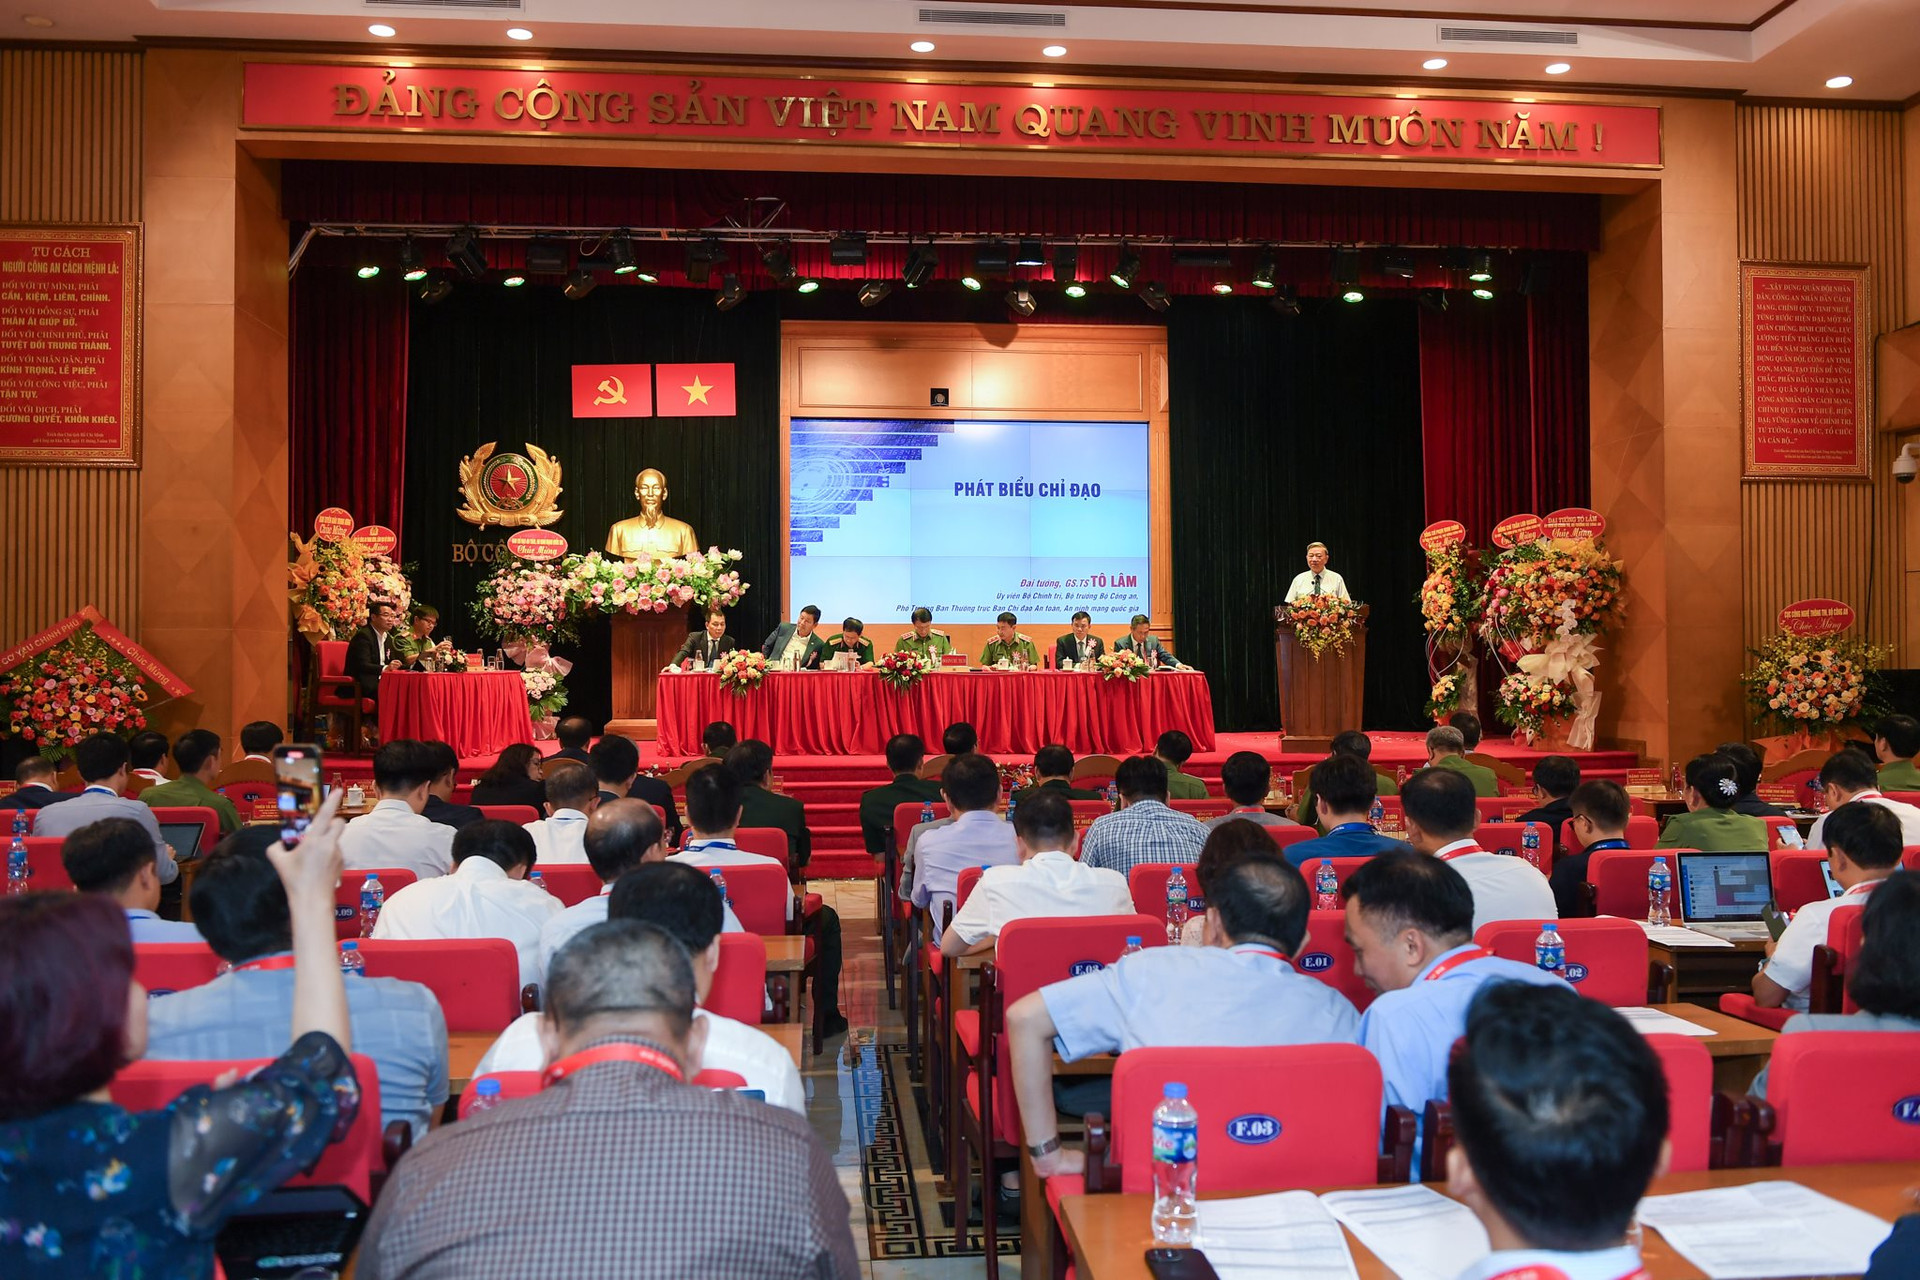 Hiệp hội An ninh mạng quốc gia giúp Việt Nam chuyển từ gia công, đại lý sang làm chủ về công nghệ, sản phẩm, dịch vụ an ninh mạng - Ảnh 1.